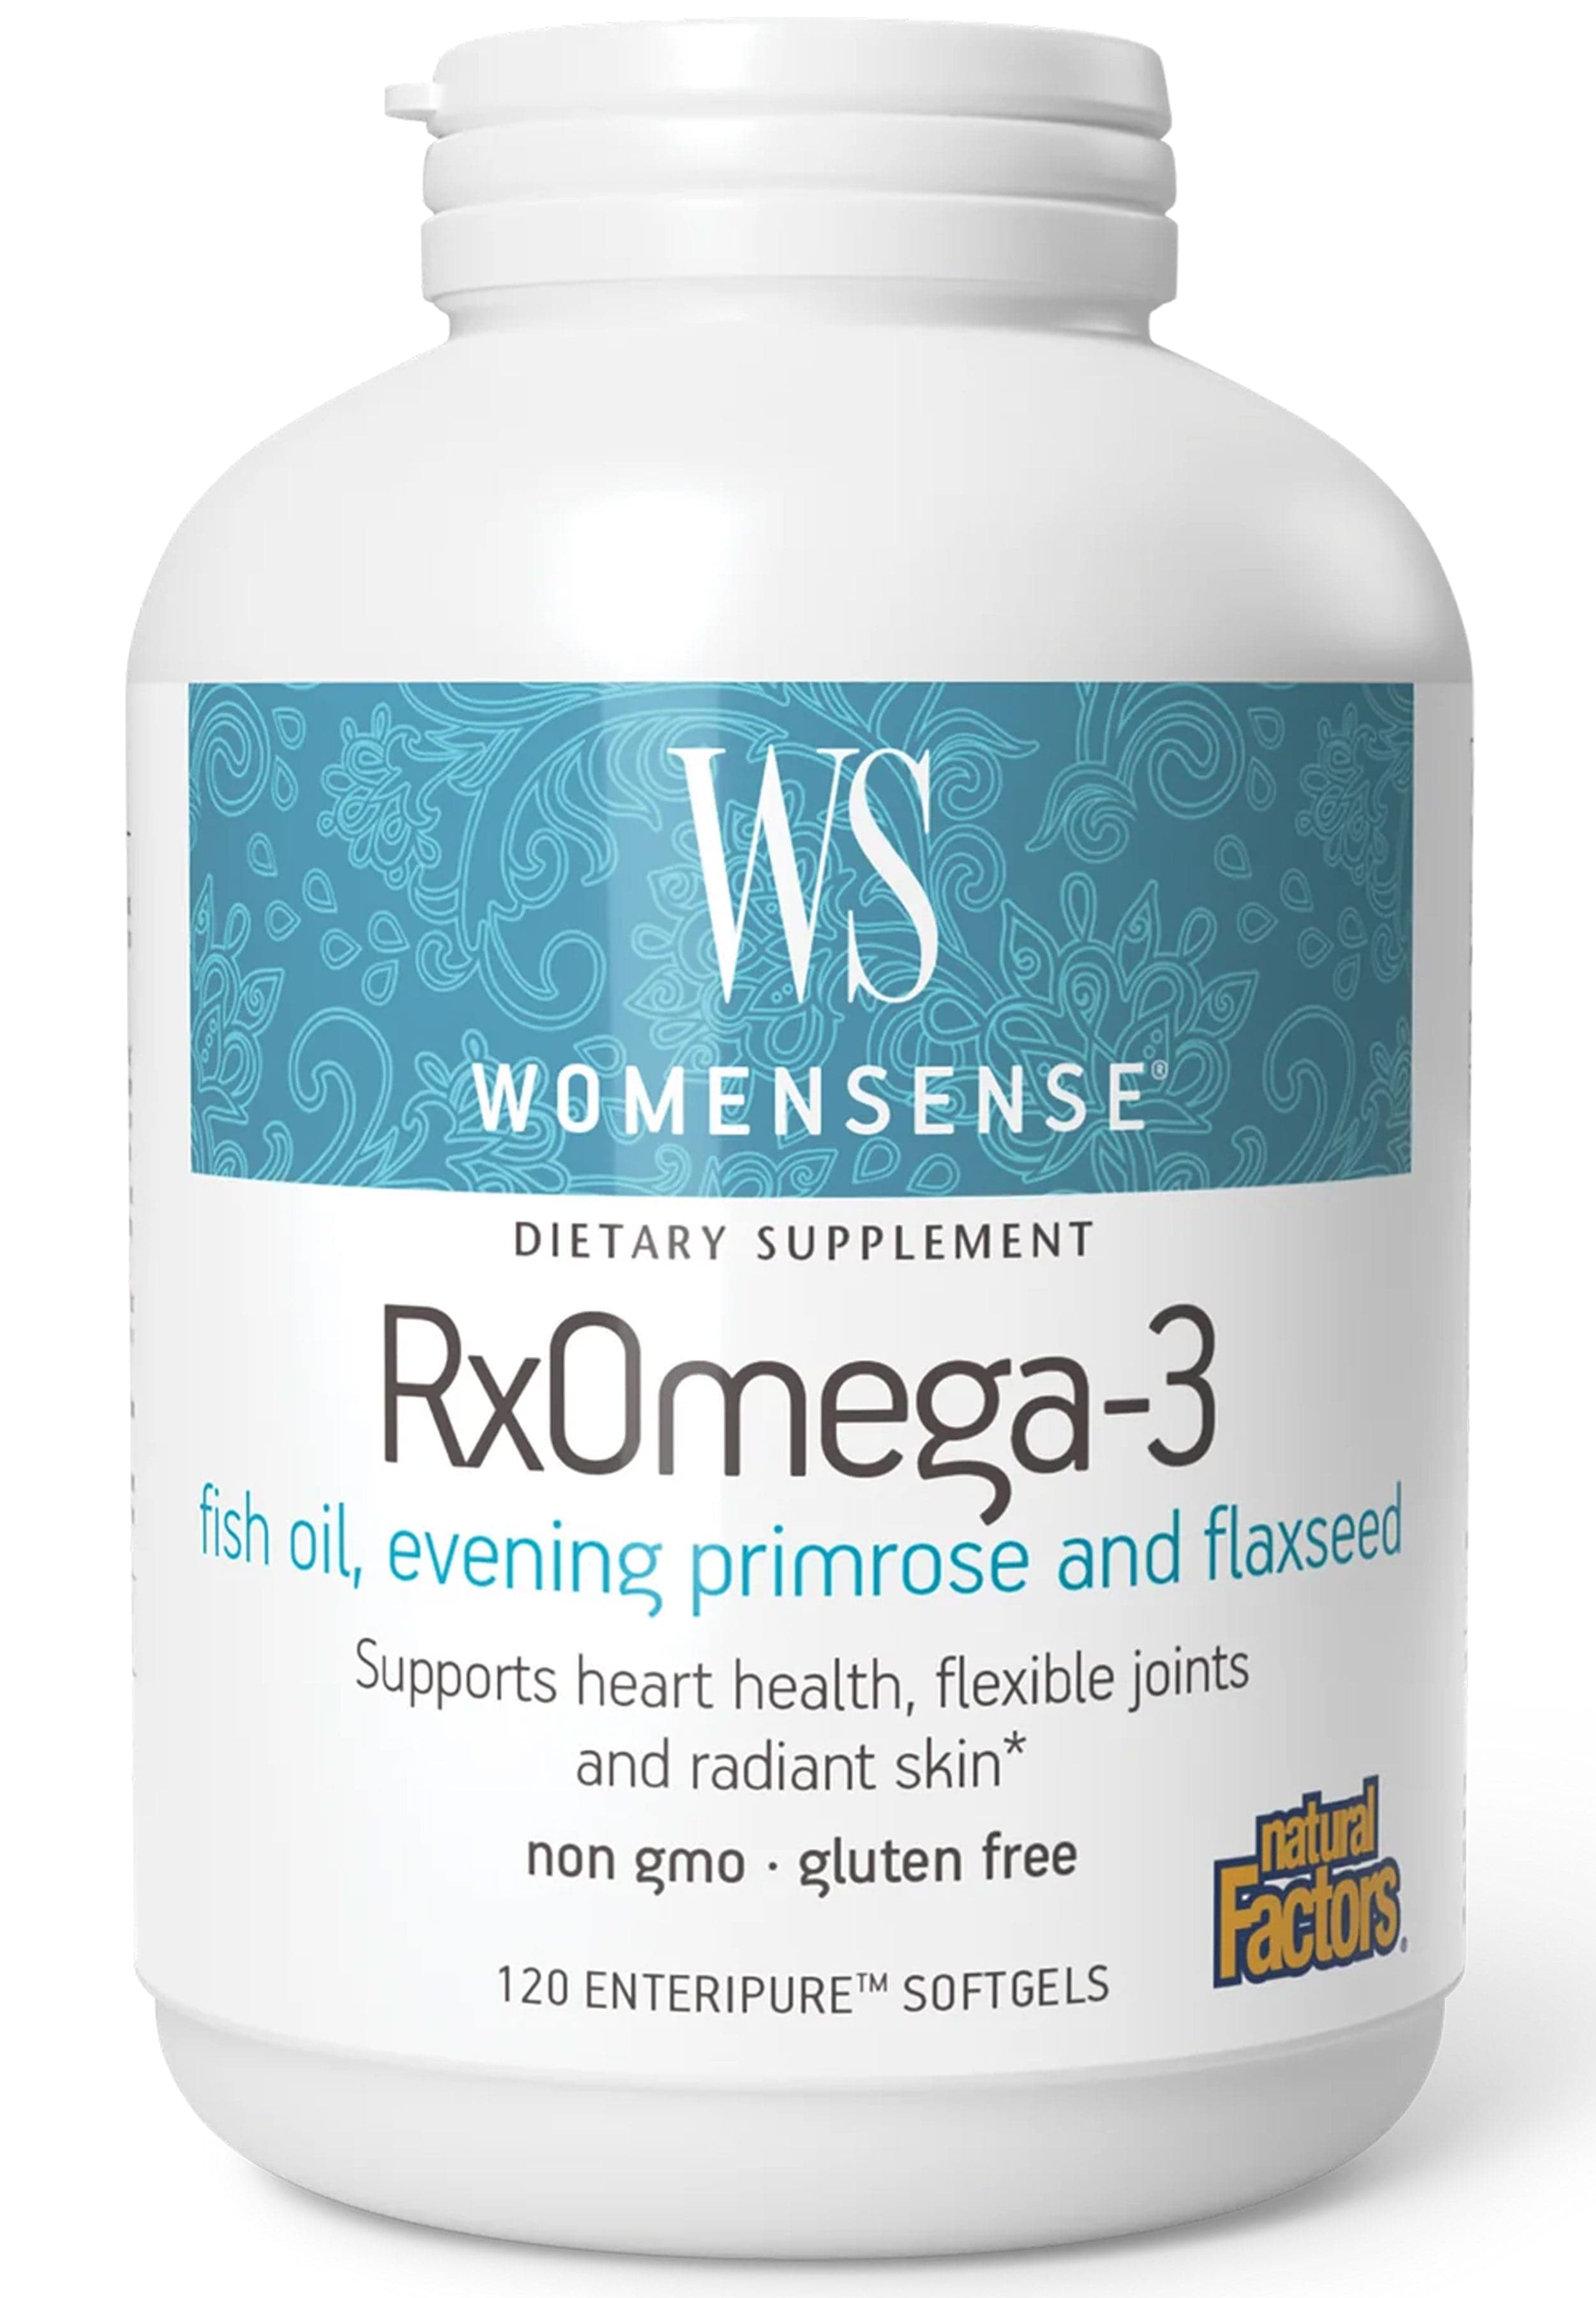 Natural Factors RXOmega-3 (Formerly RXOmega-3 Women's Blend)